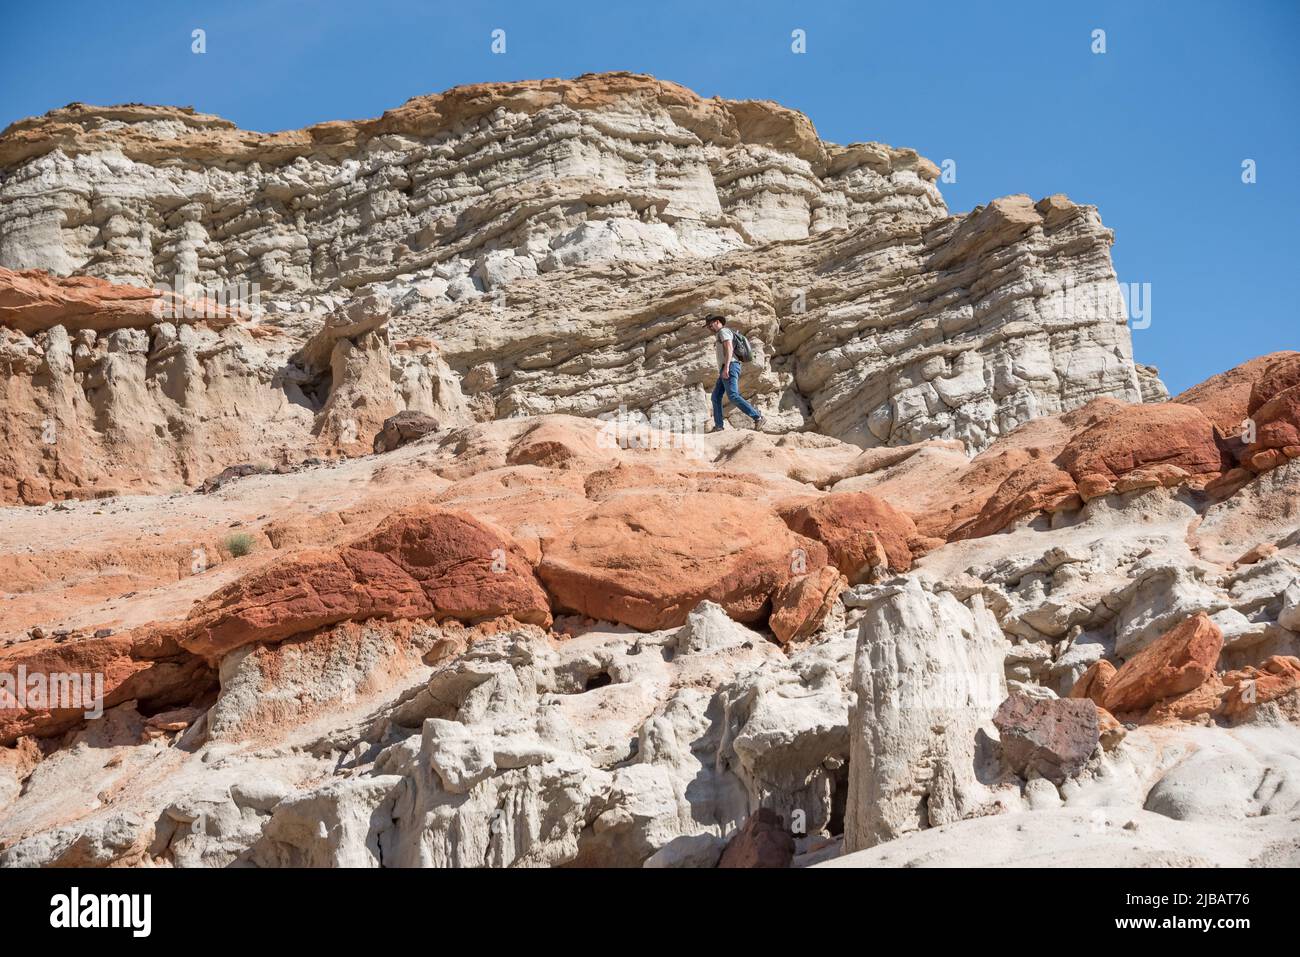 Un homme explore une couche de falaises de grès rouge dans la réserve naturelle de Hagen Canyon au parc national de Red Rock Canyon en Californie, un sentier de randonnée pittoresque dans le désert. Banque D'Images